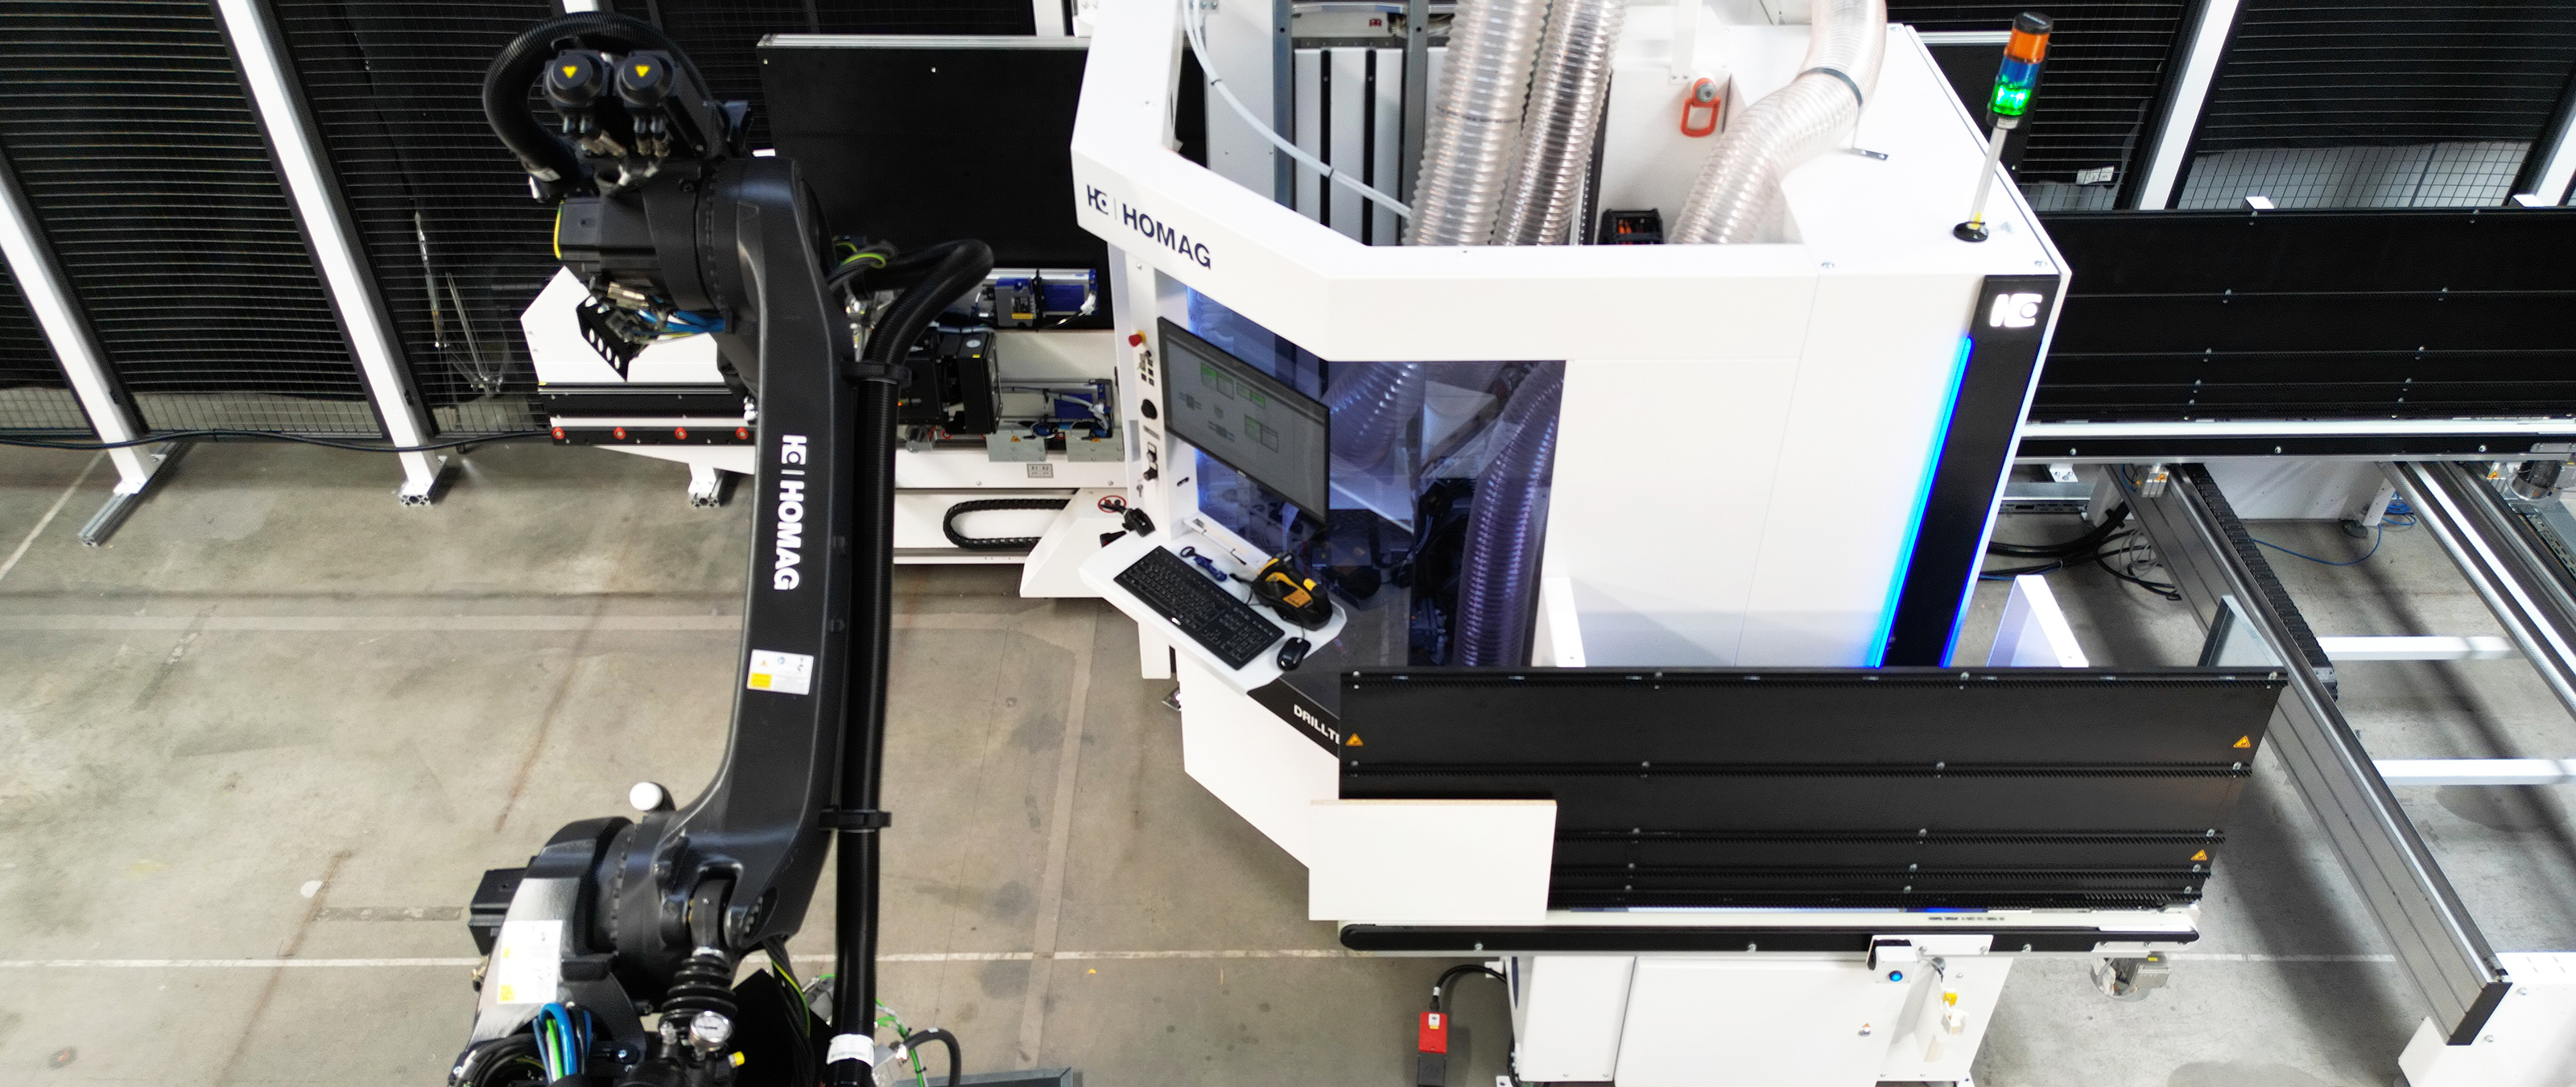 縦型 CNC マシニングセンター DRILLTEQ V-310 のロボットハンドリング FEEDBOT D-310